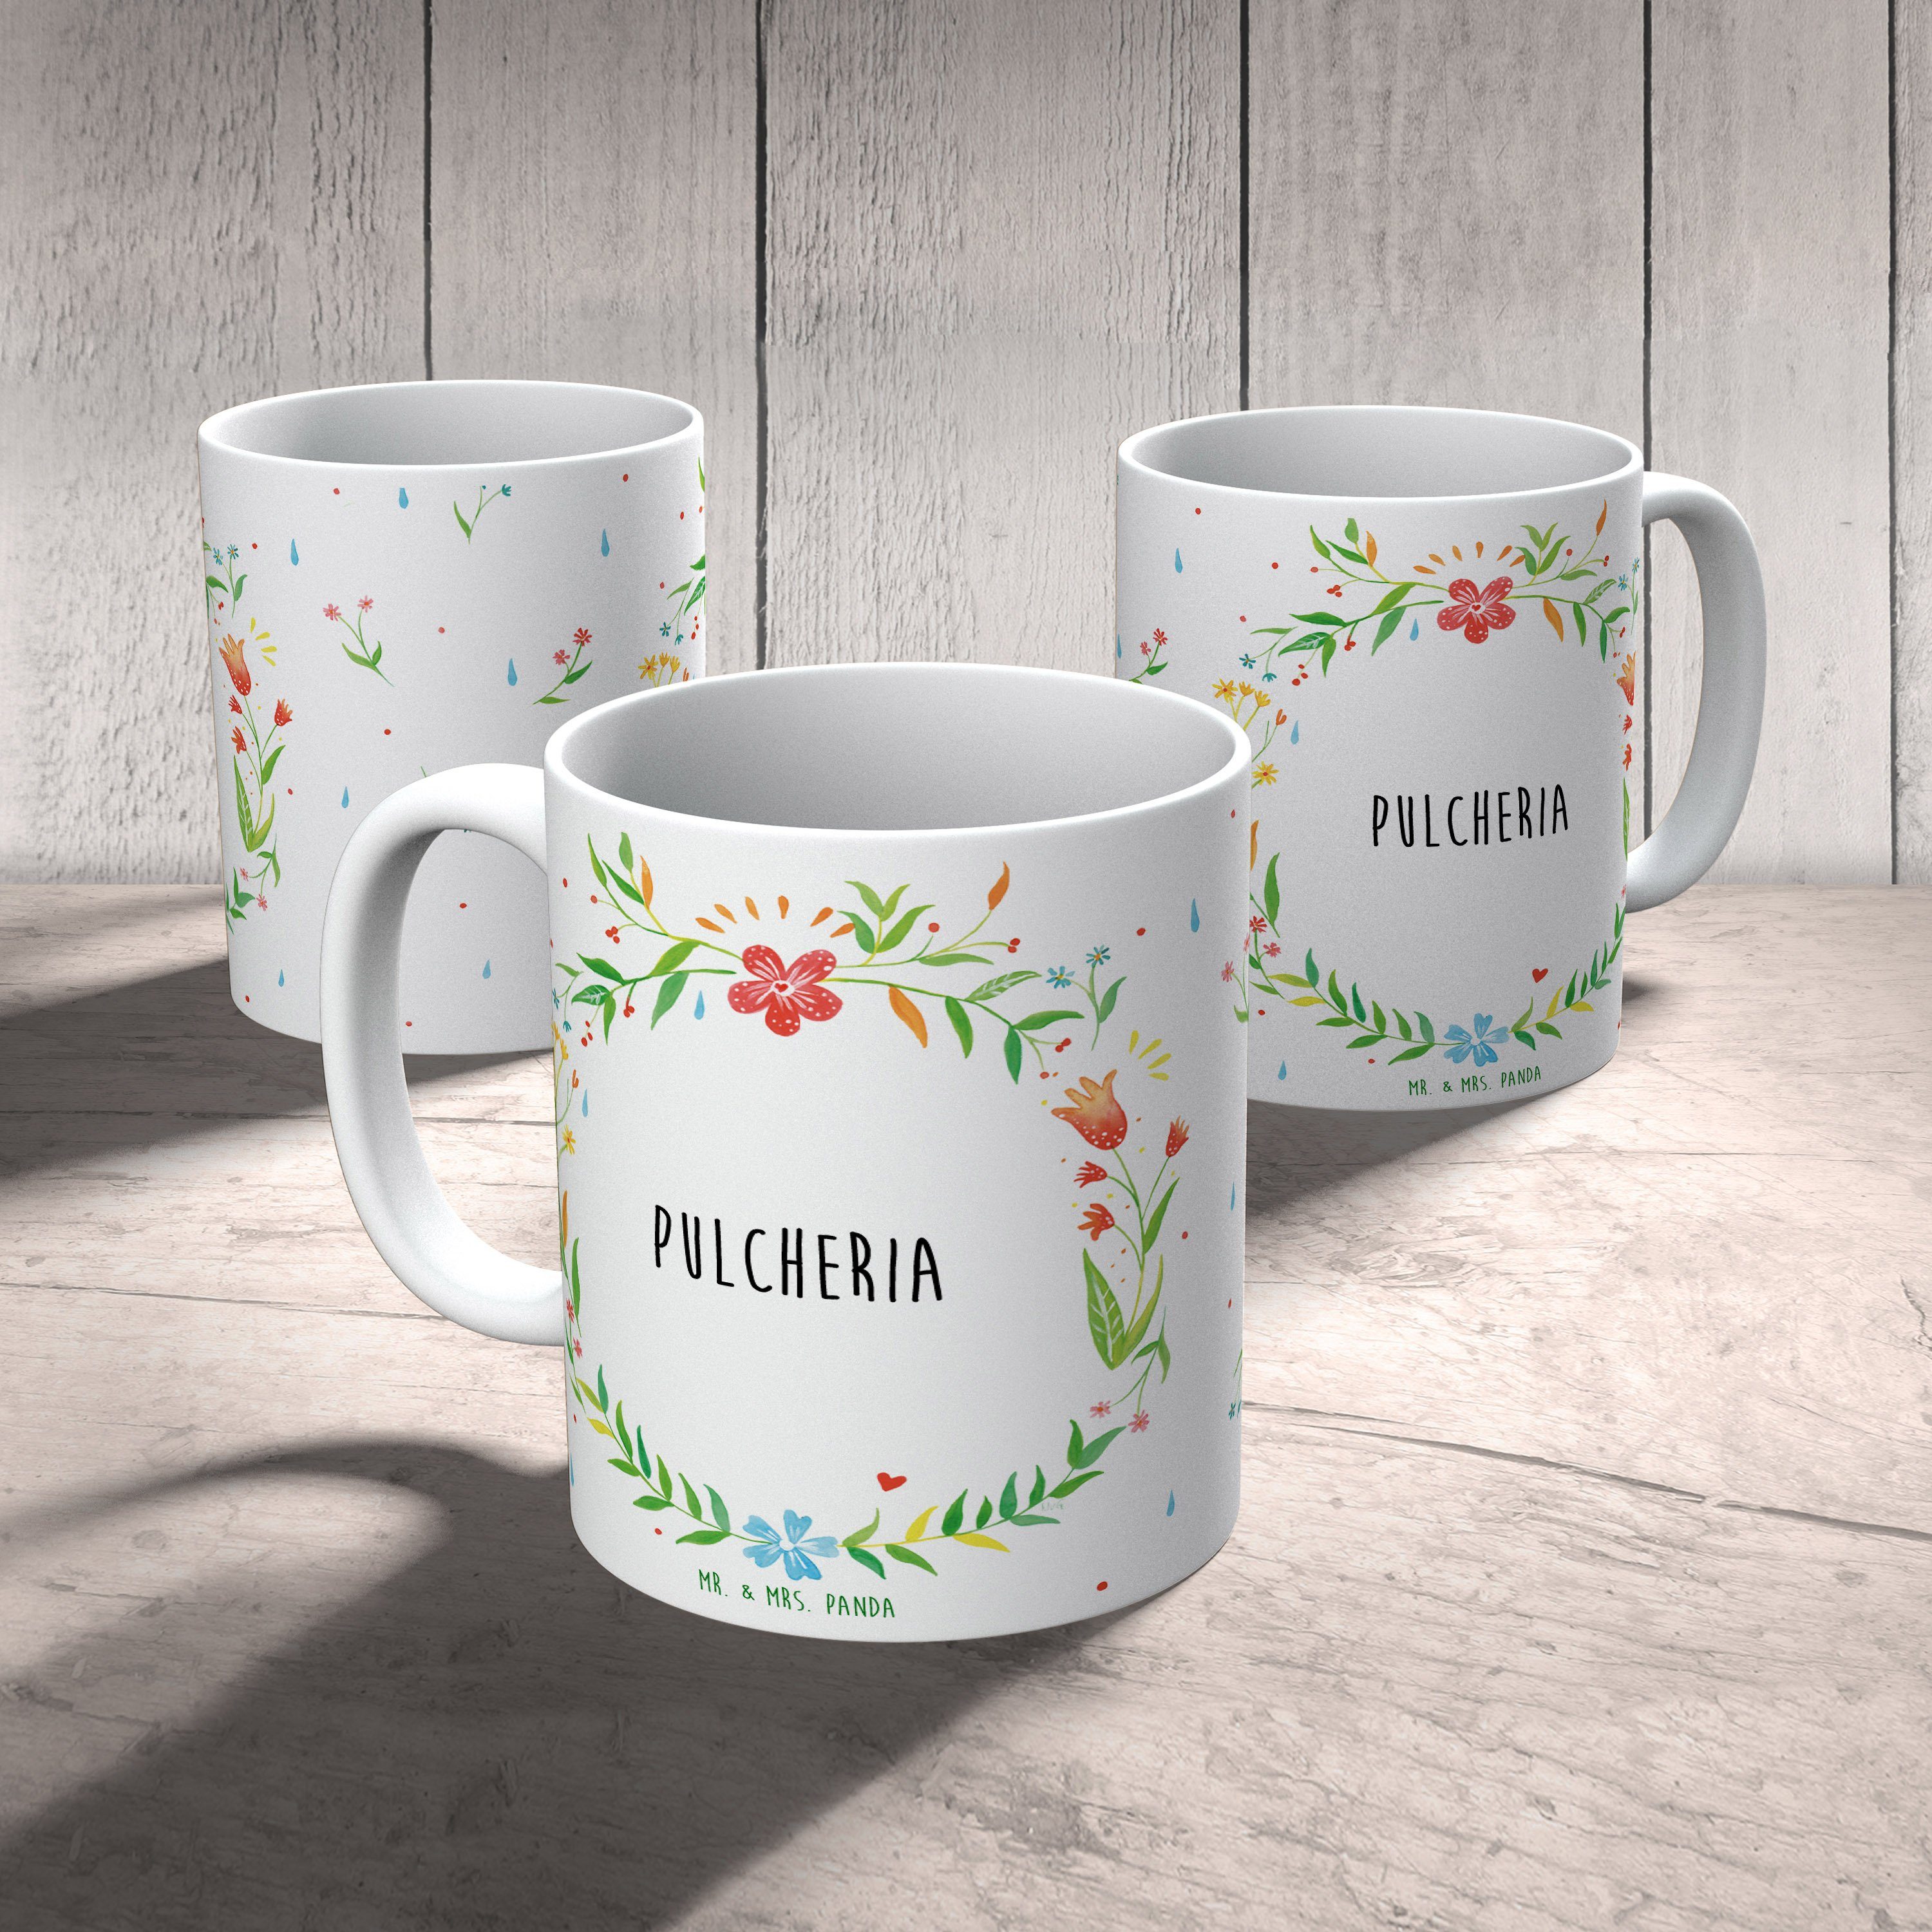 Mrs. Panda Mr. Pulcheria Tasse Geschenk, & Sprüche, Keramik - Kaffeebecher, Tasse Keramiktasse, Tass,